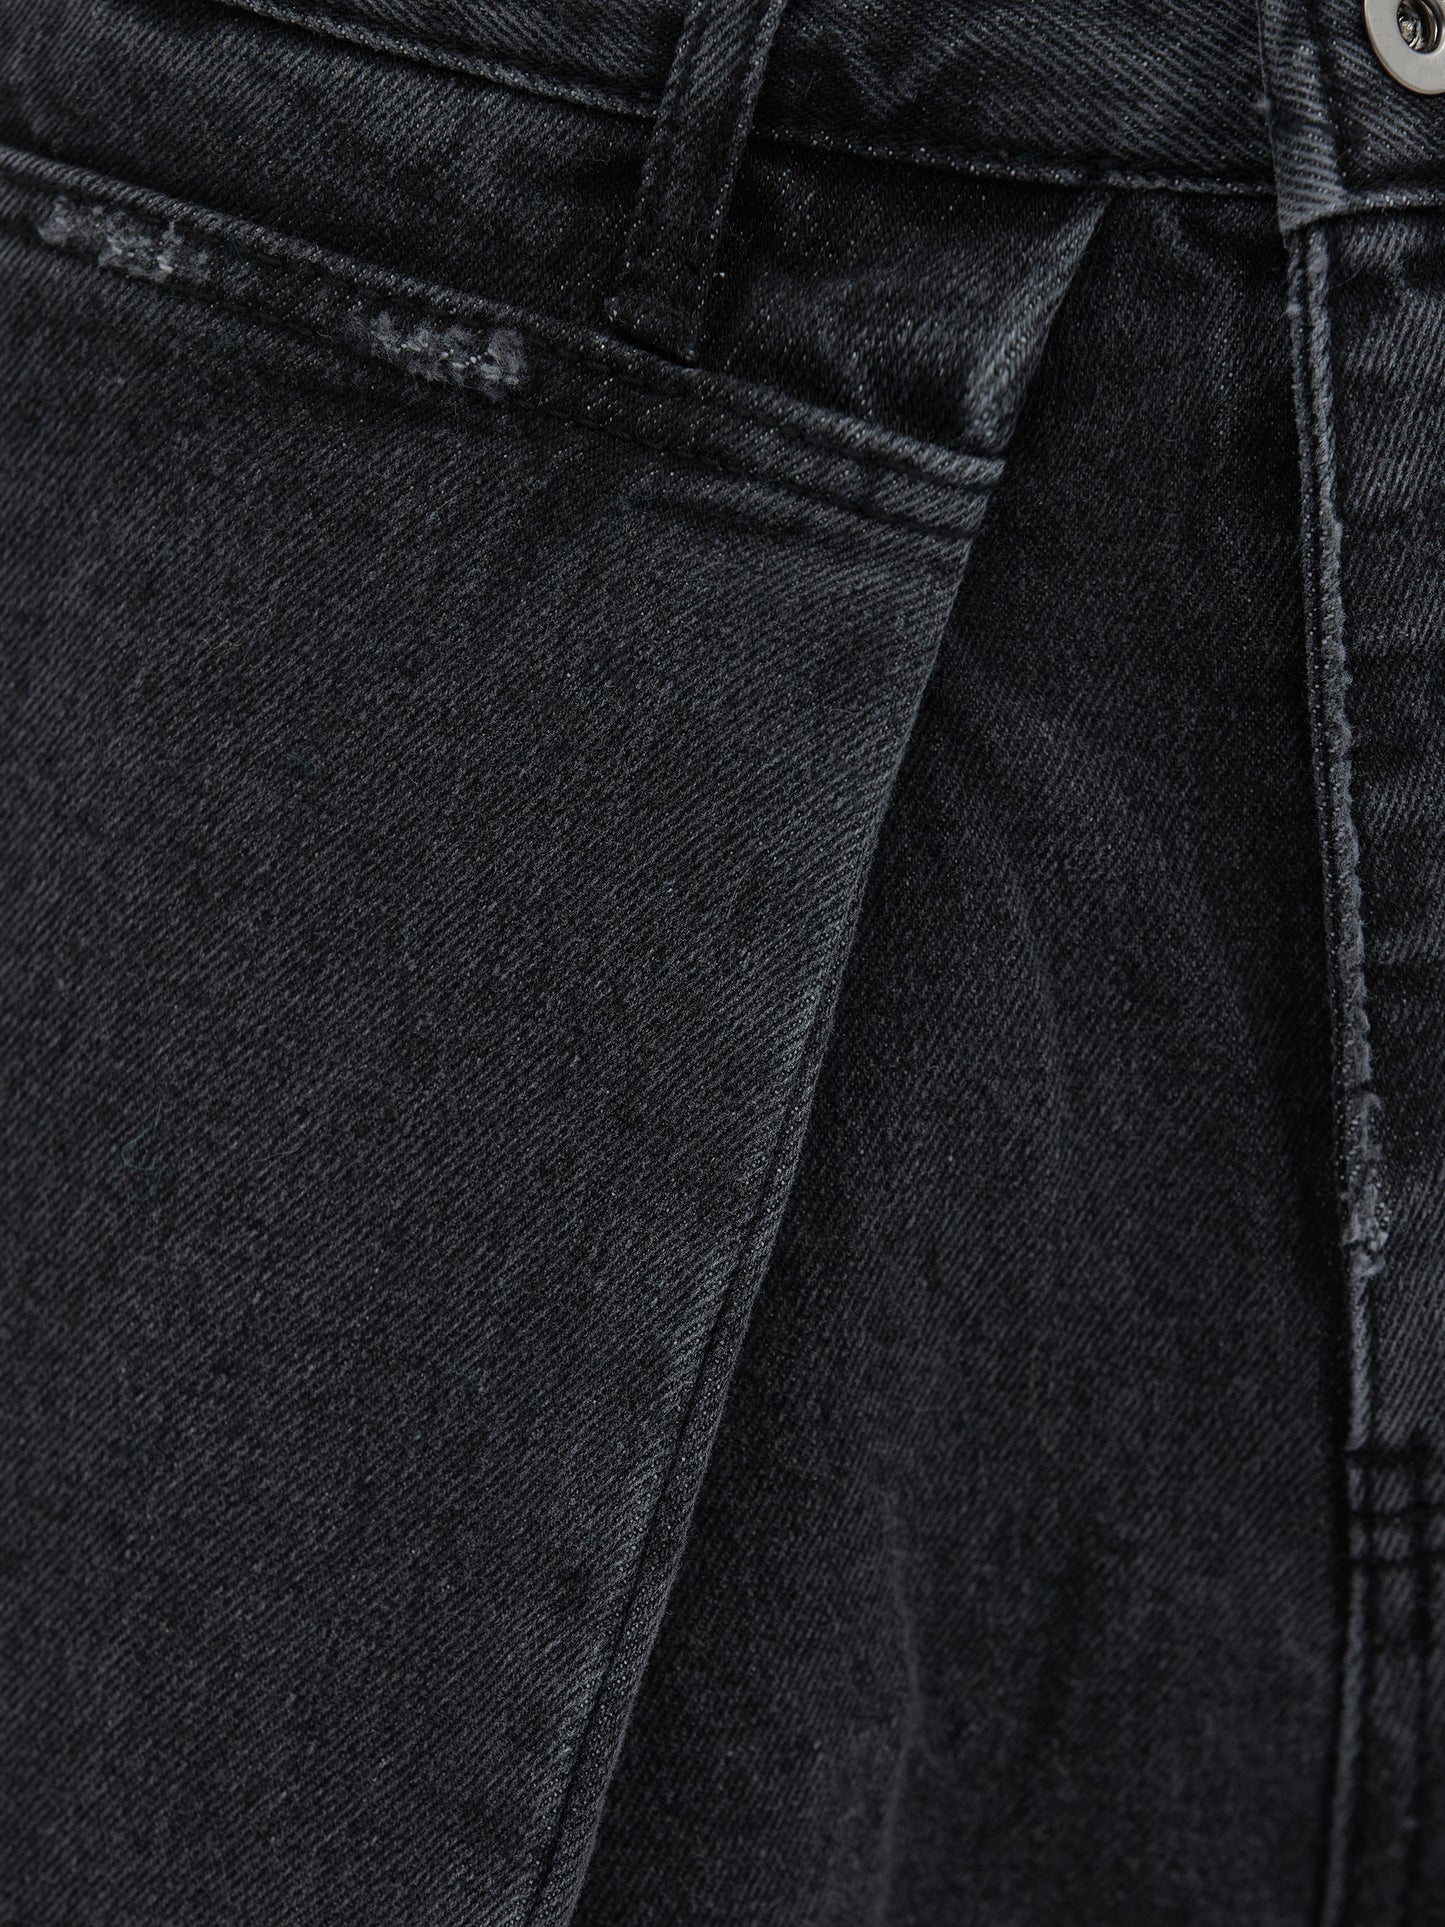 Folding Jeans, Faded Black